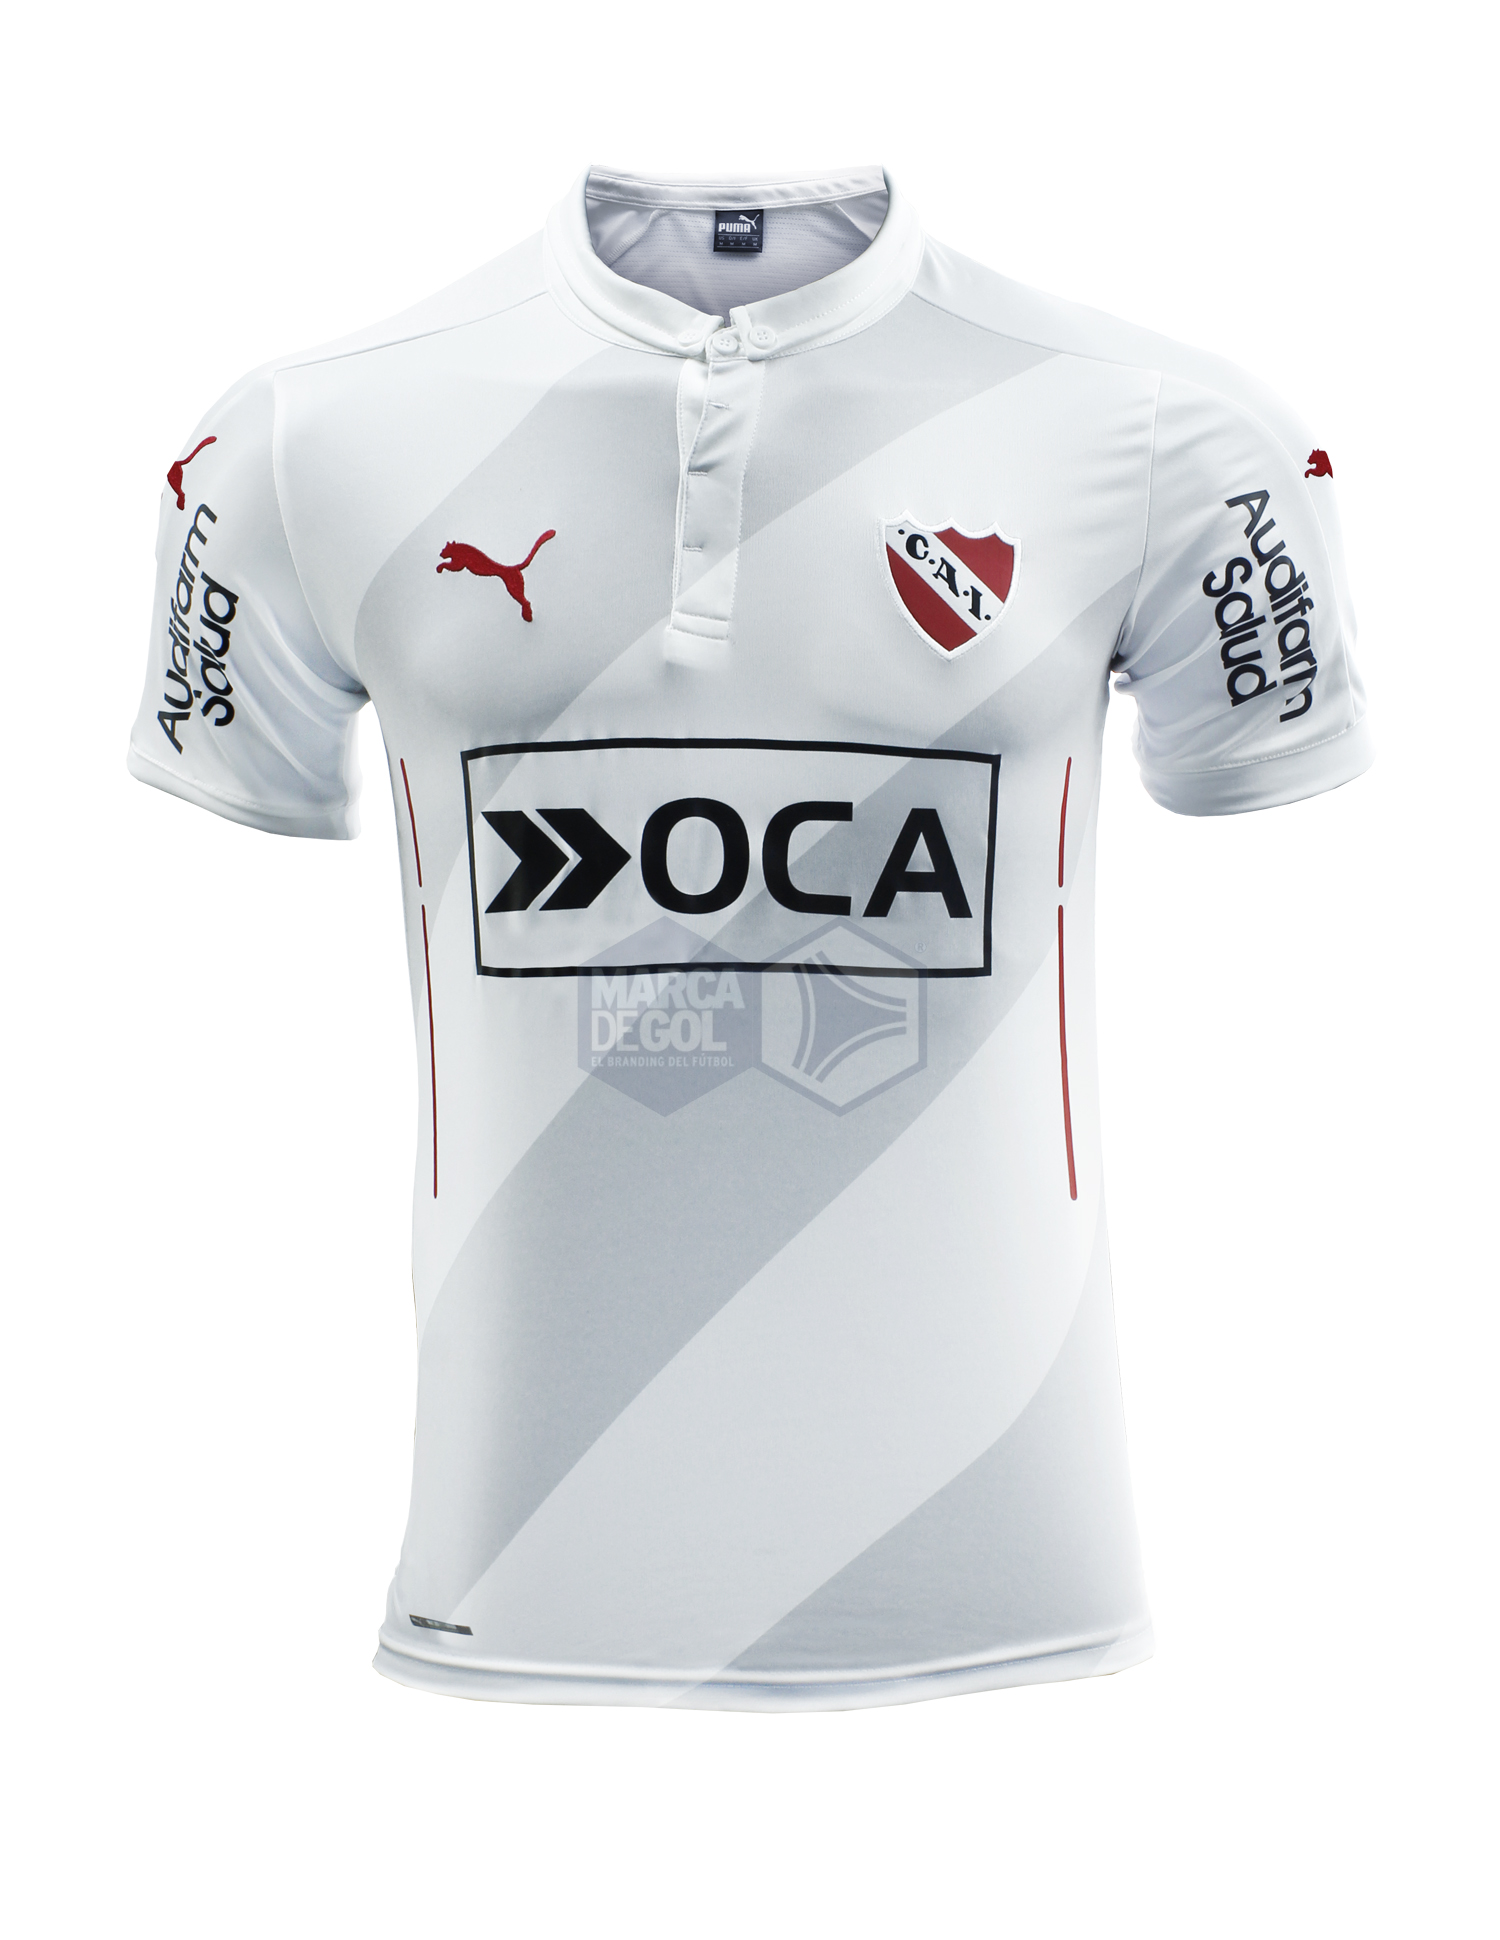 Camiseta Club Atlético Independiente Puma Branco Vermelho, Camiseta,  camiseta, branco, ativo Camisa png